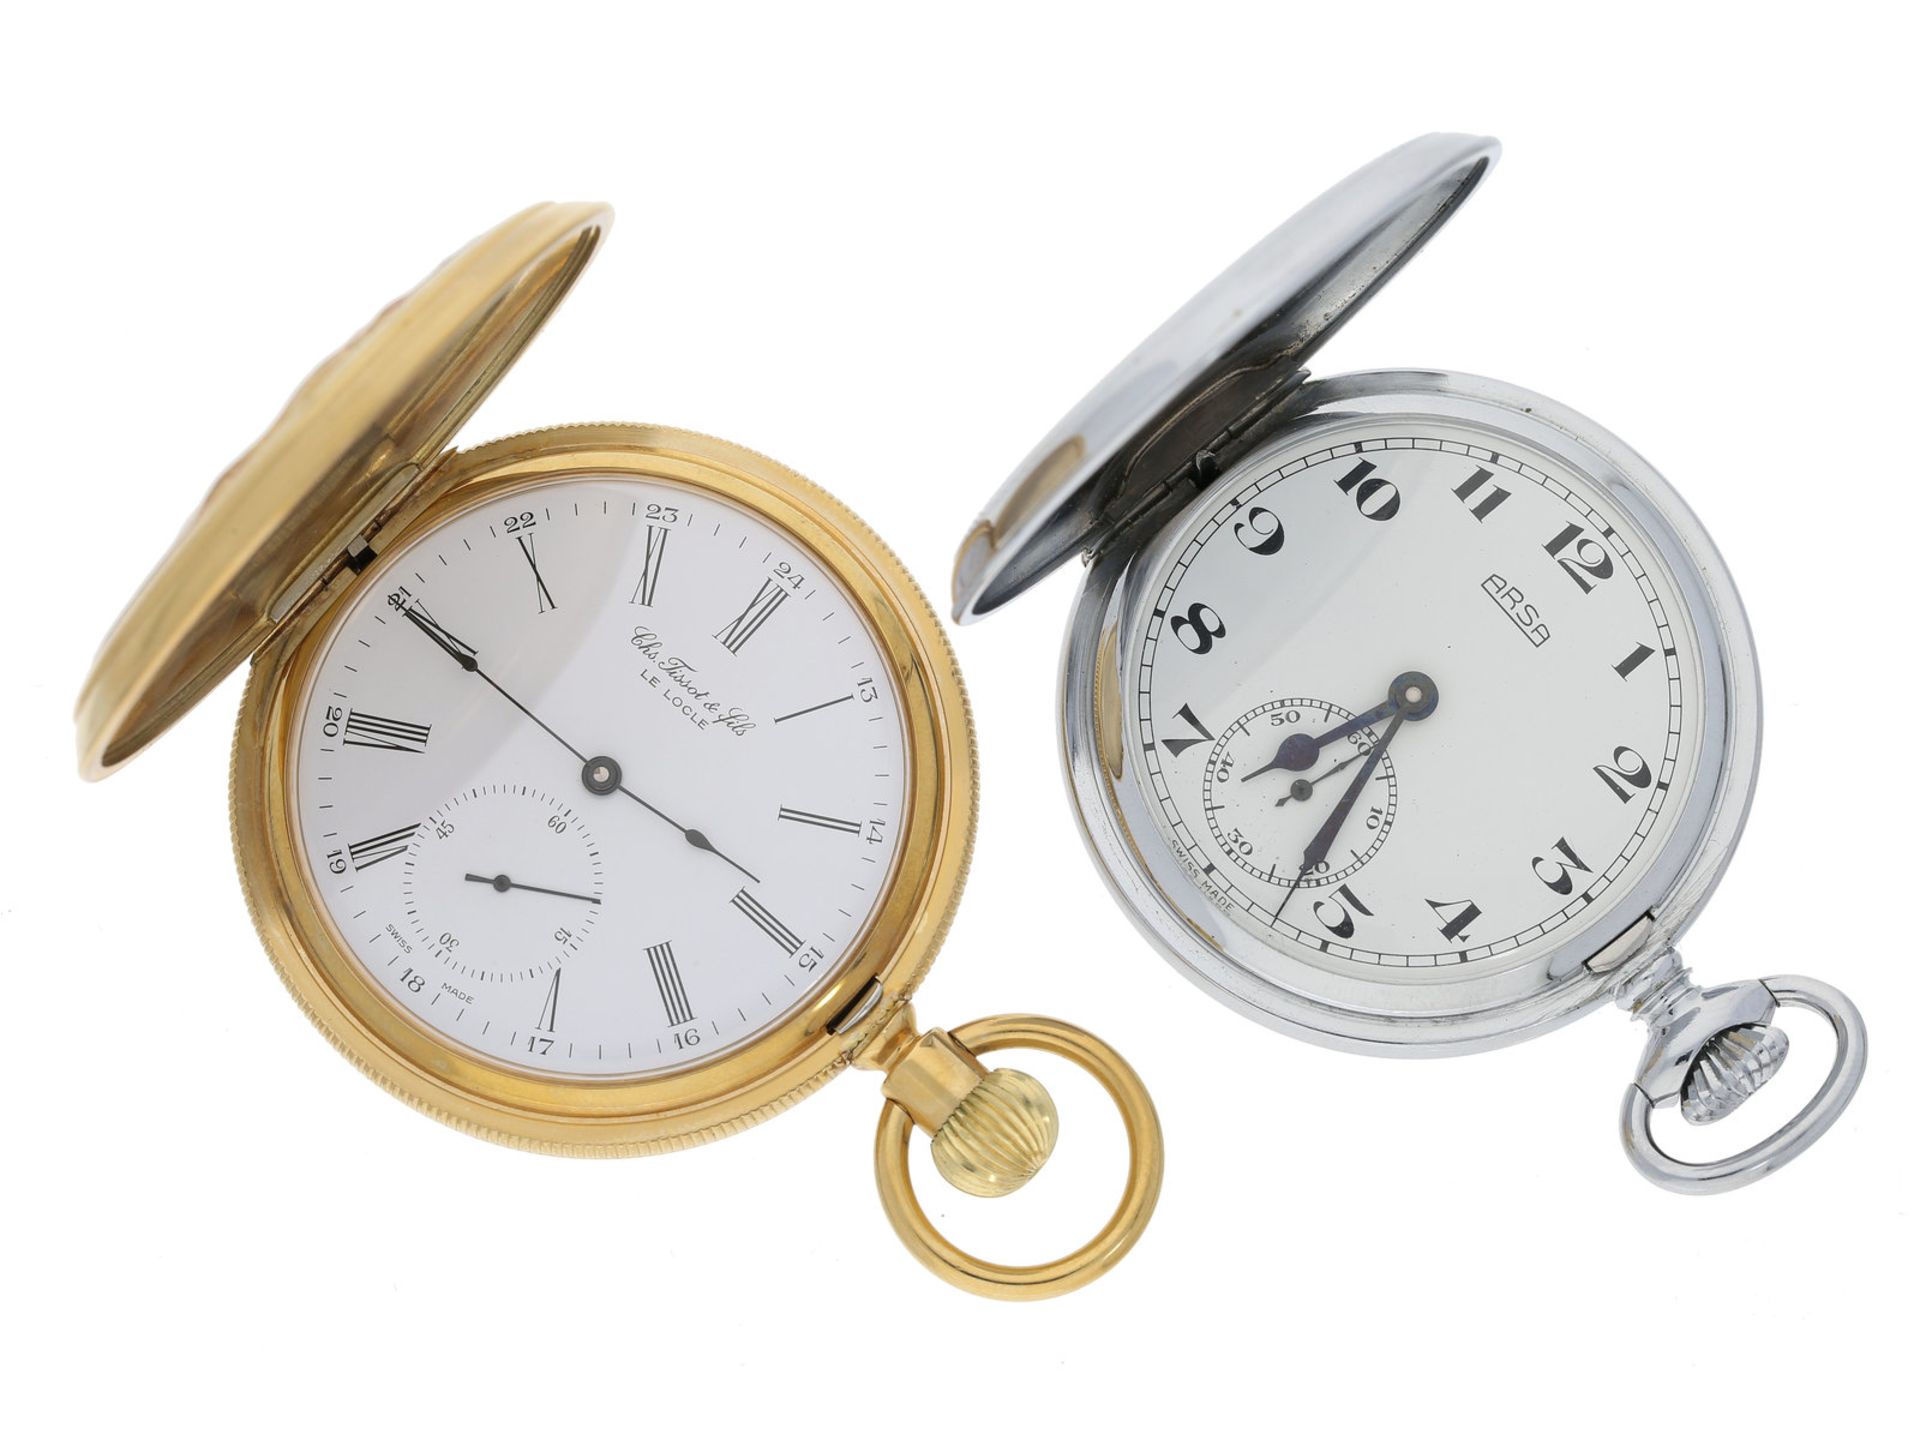 Taschenuhr: Konvolut von 2 vintage Taschenuhren, Tissot und Arsa, inkl. einer Uhrenkette